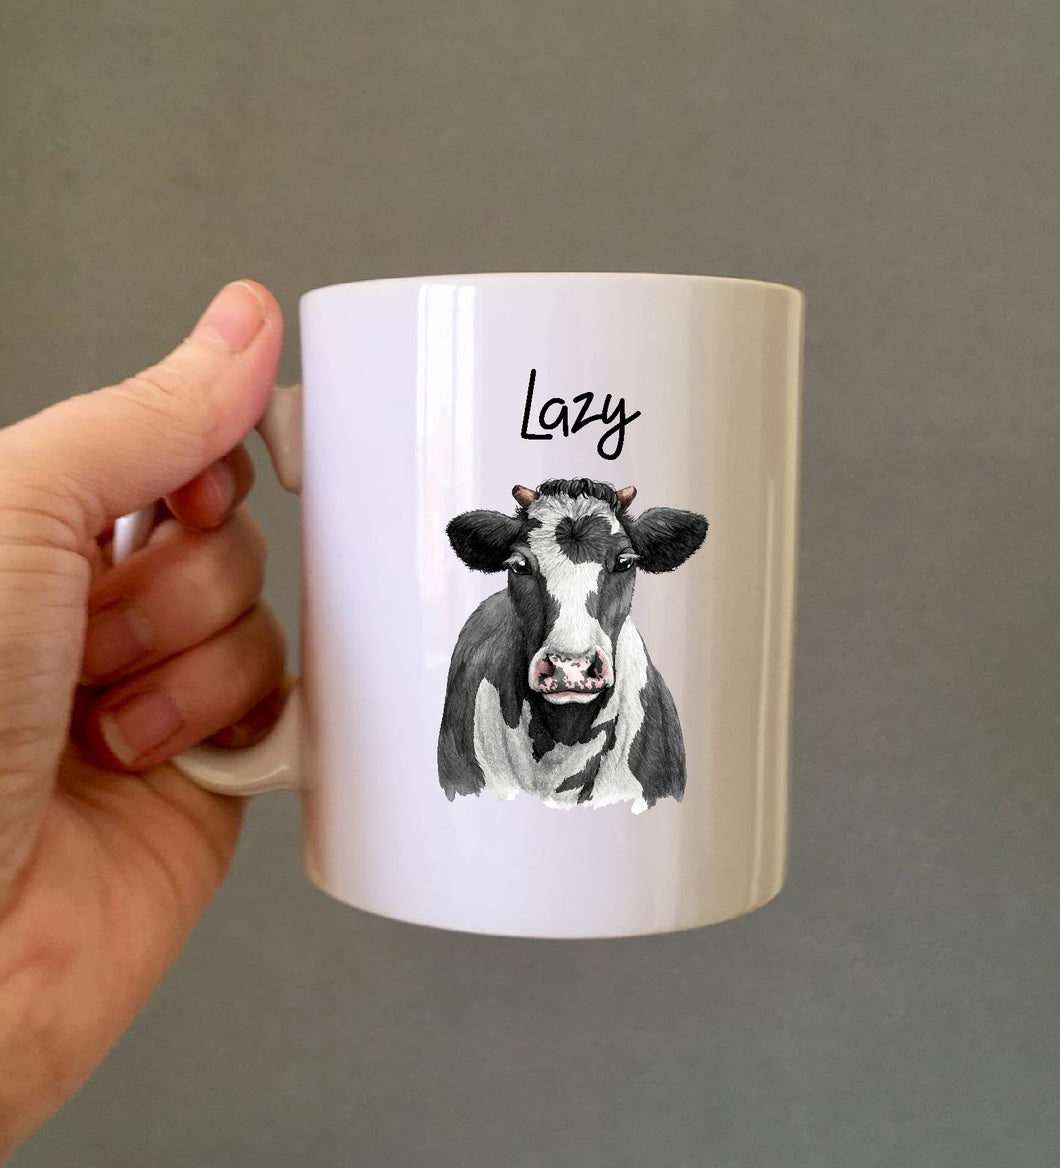 Lazy Cow Ceramic Printed Mug